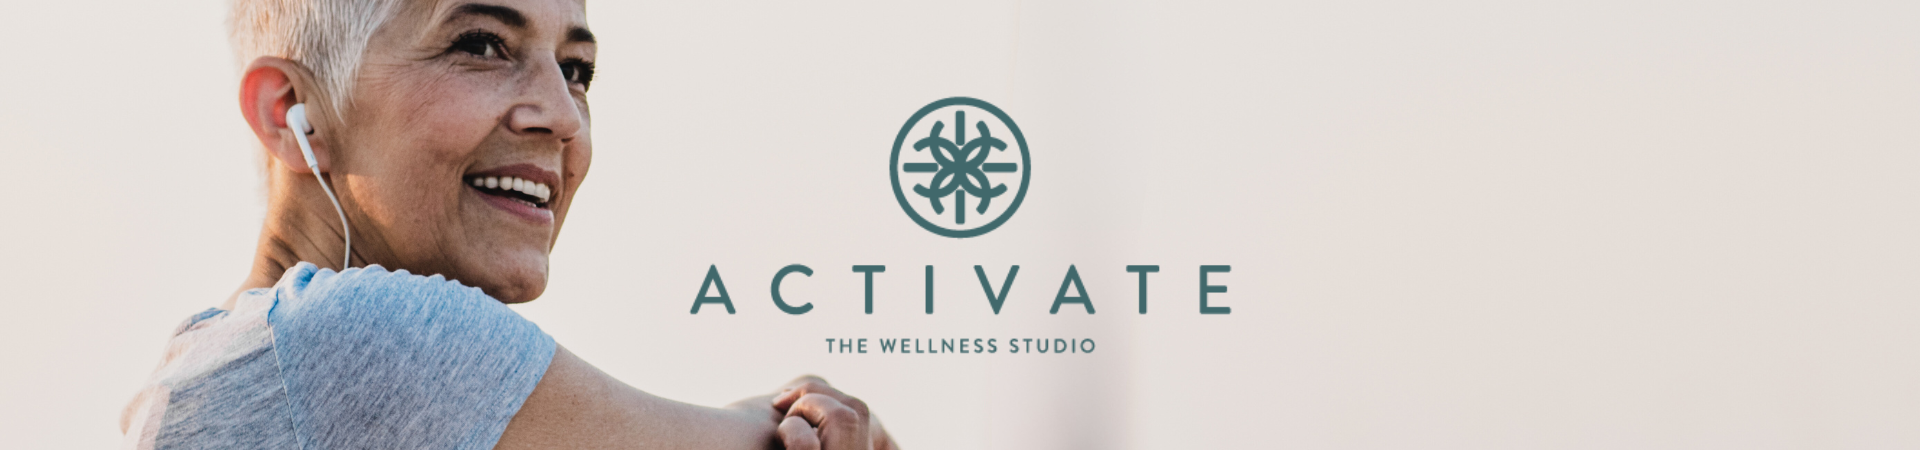 Active Wellness - Activate The Wellness Studio